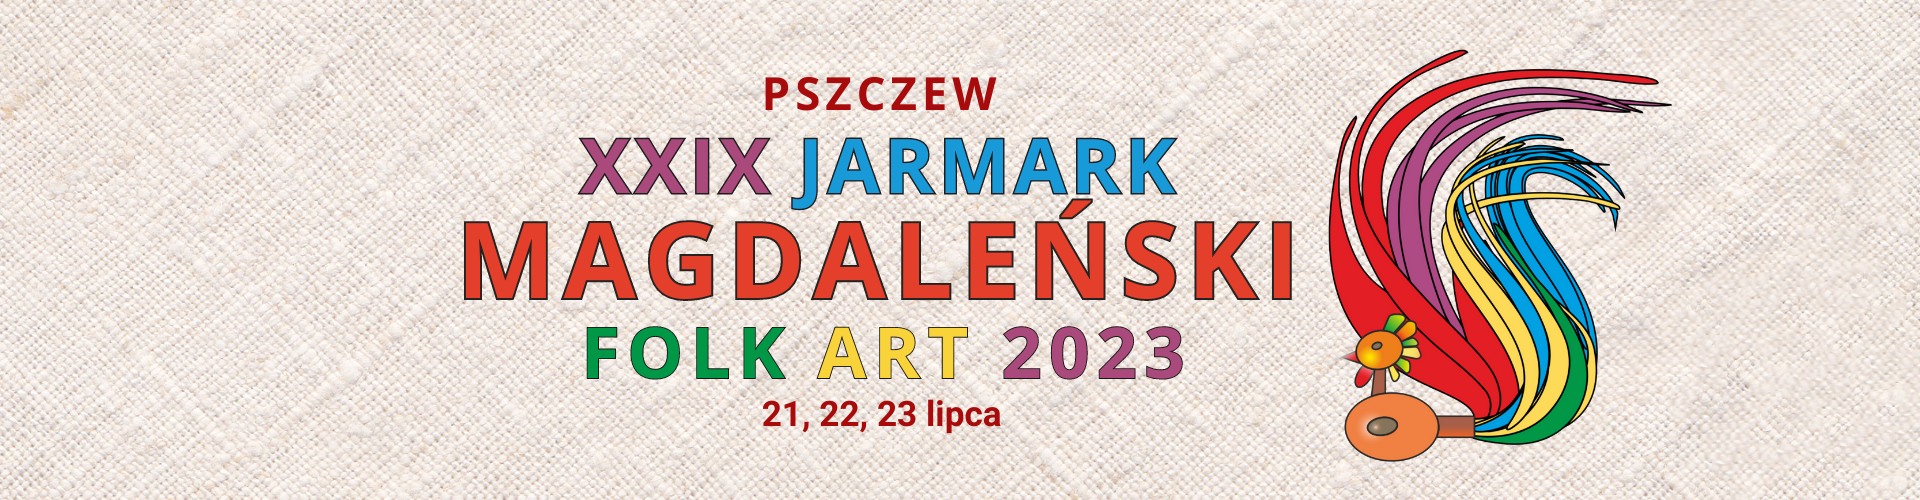 XXIX Jarmark Magdaleński